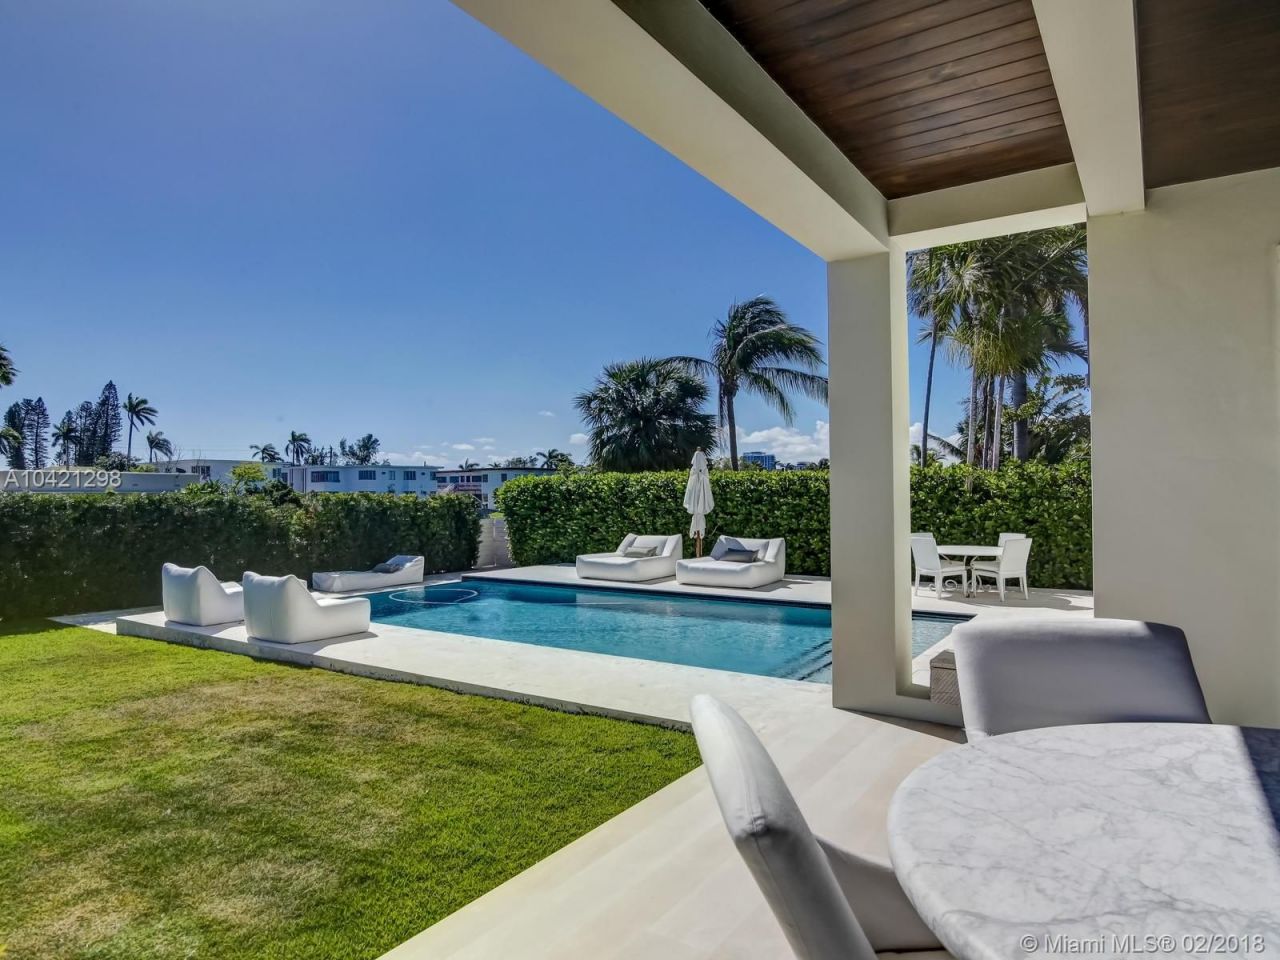 Villa in Miami, USA, 430 sq.m - picture 1